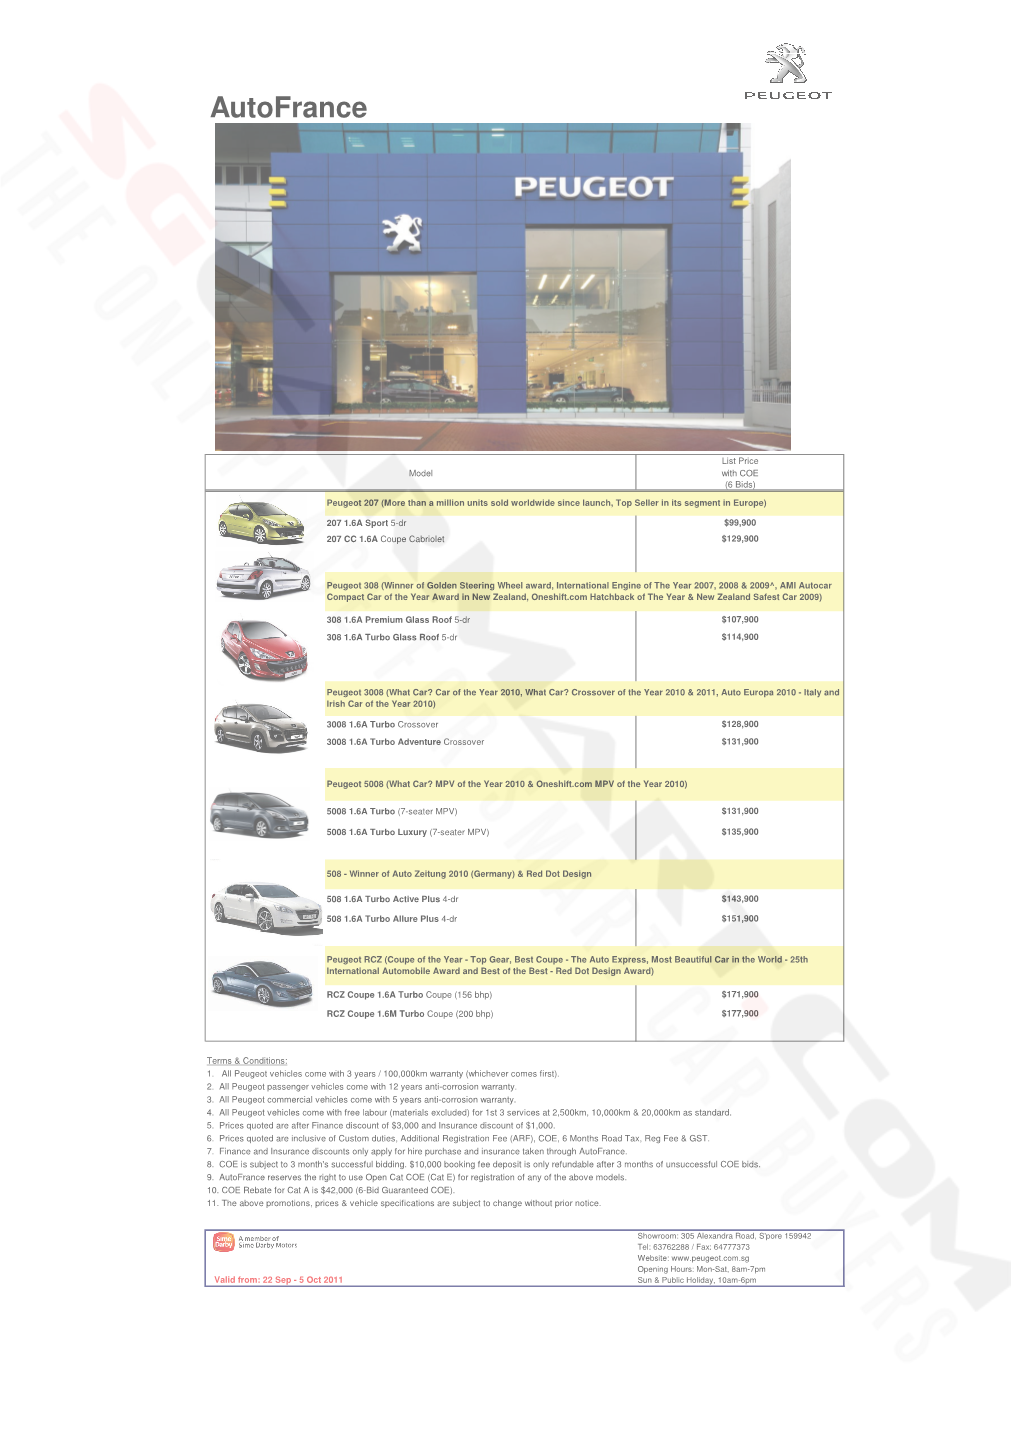 Peugeot Pricelist Sep 2011 (2011-09-26)